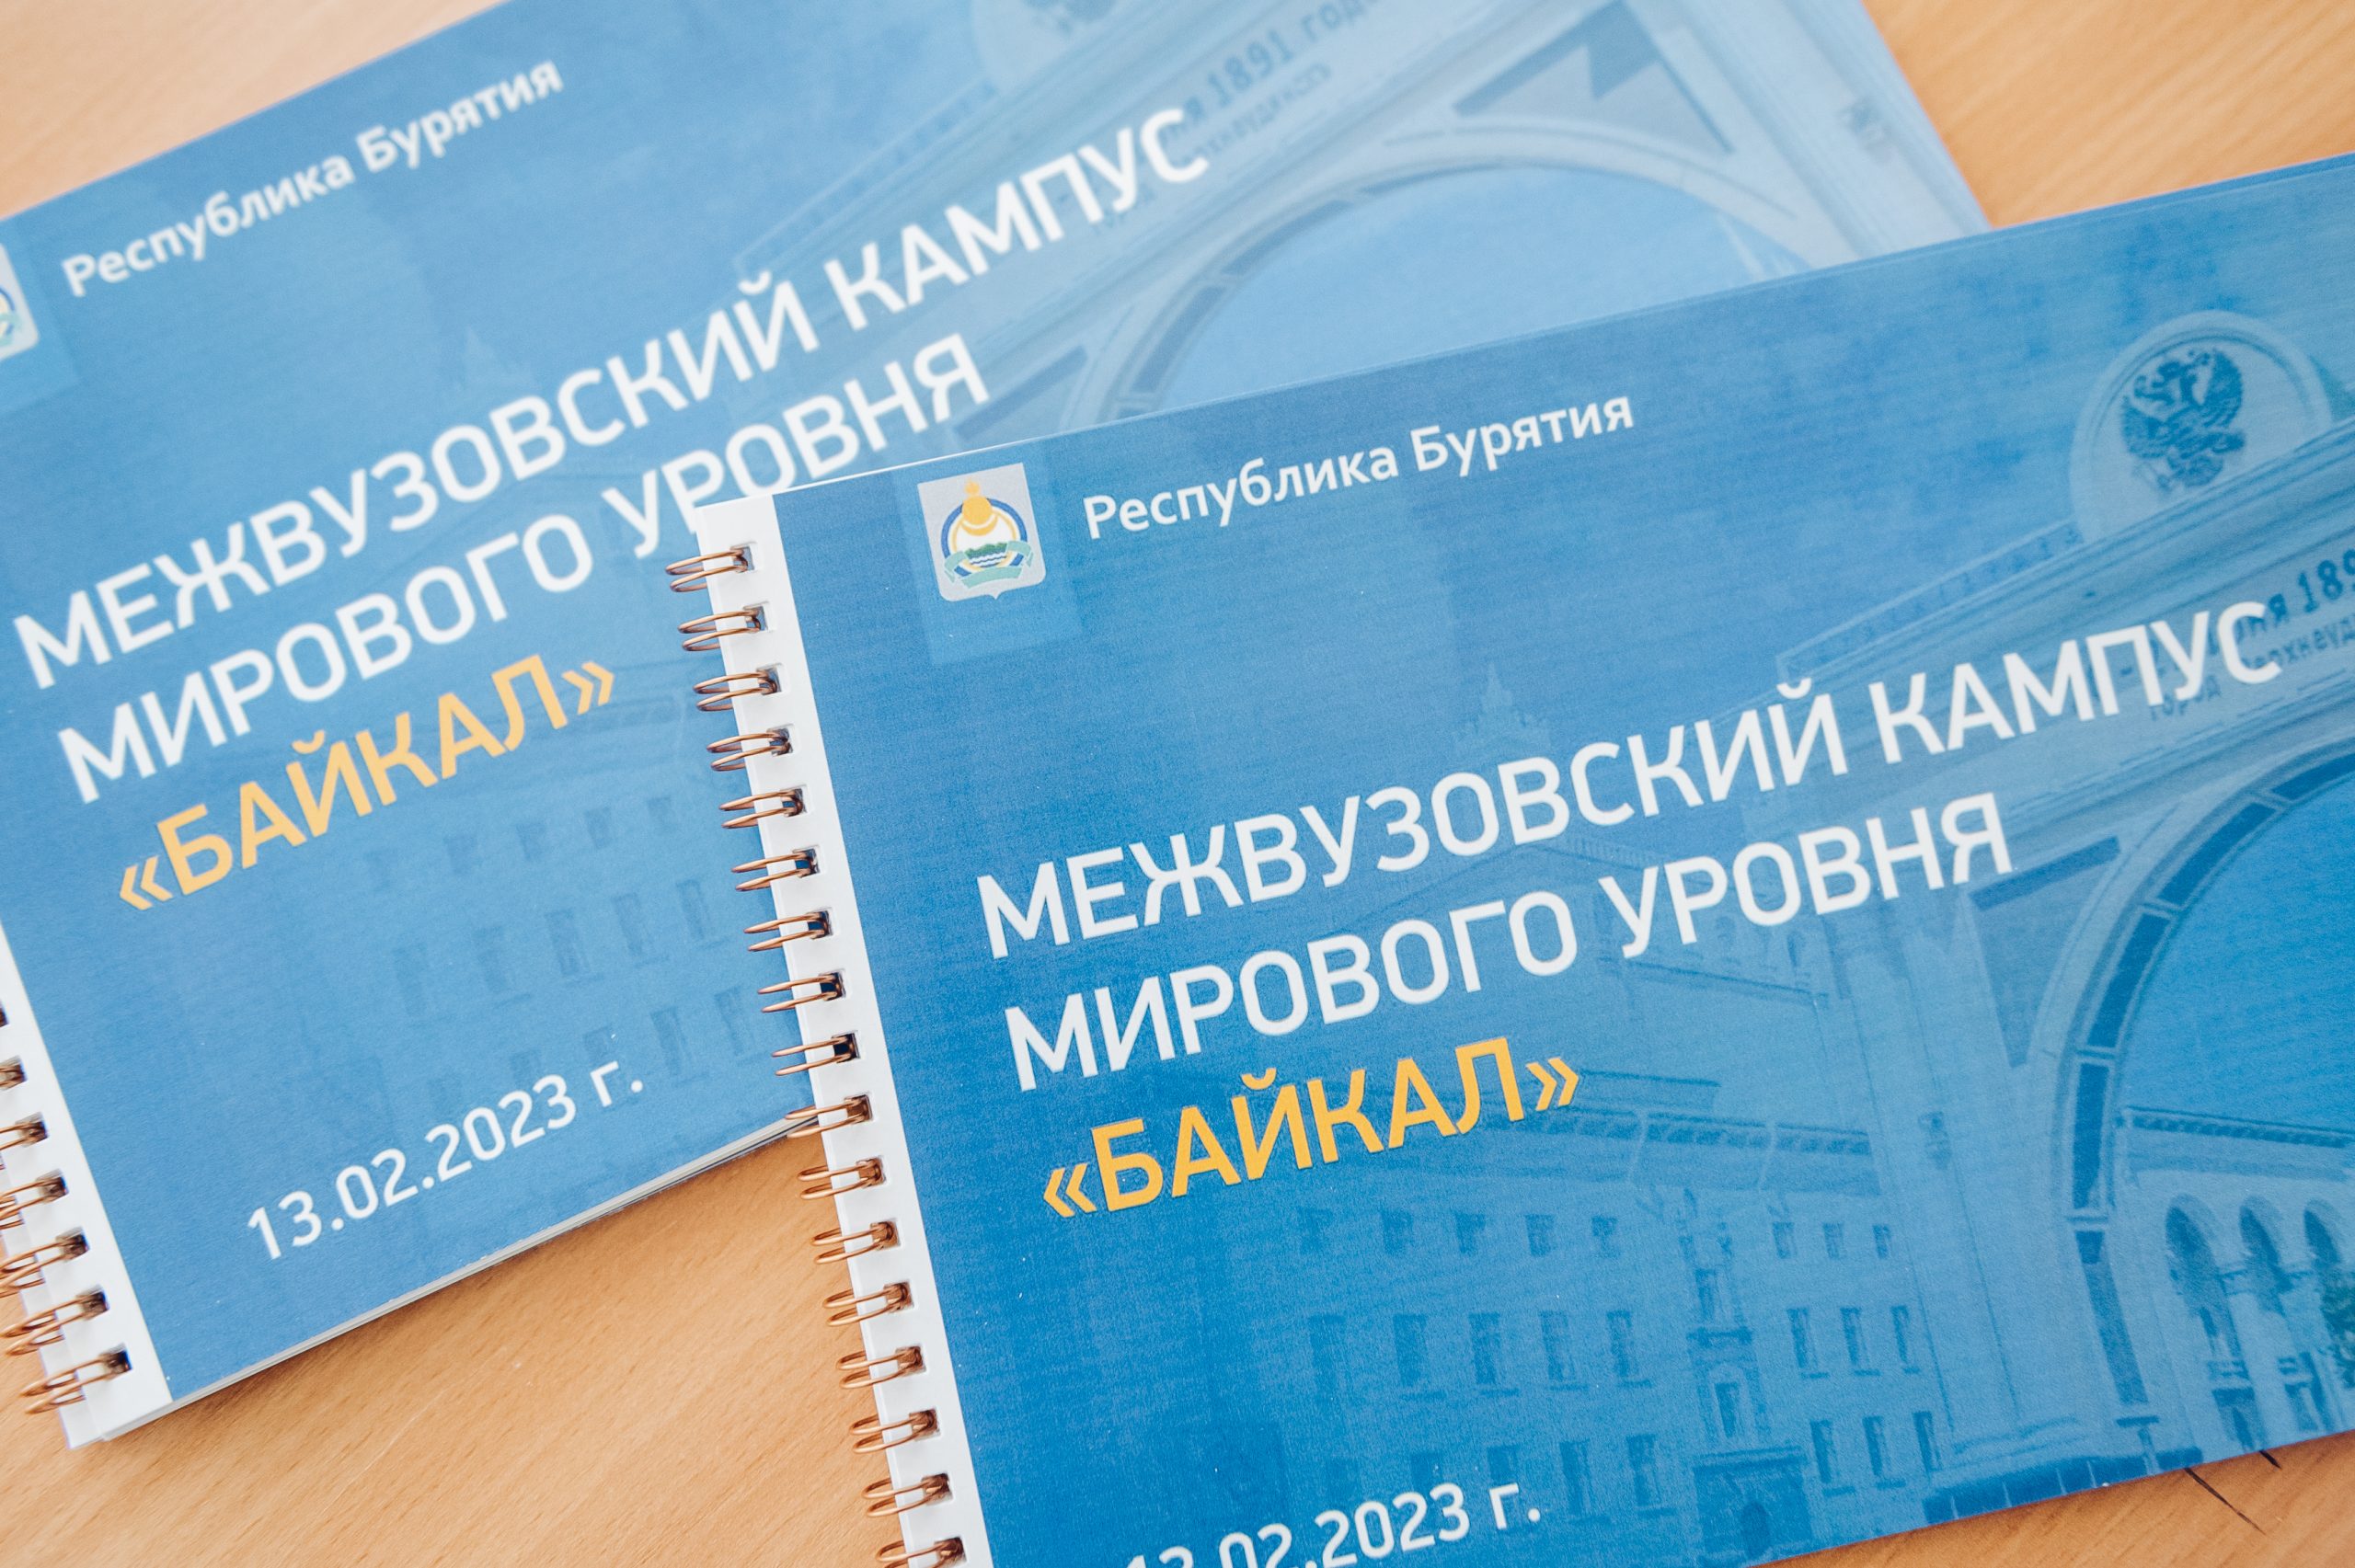 Межвузовский кампус «Байкал» планируют начать строить в Бурятии в 2024 году